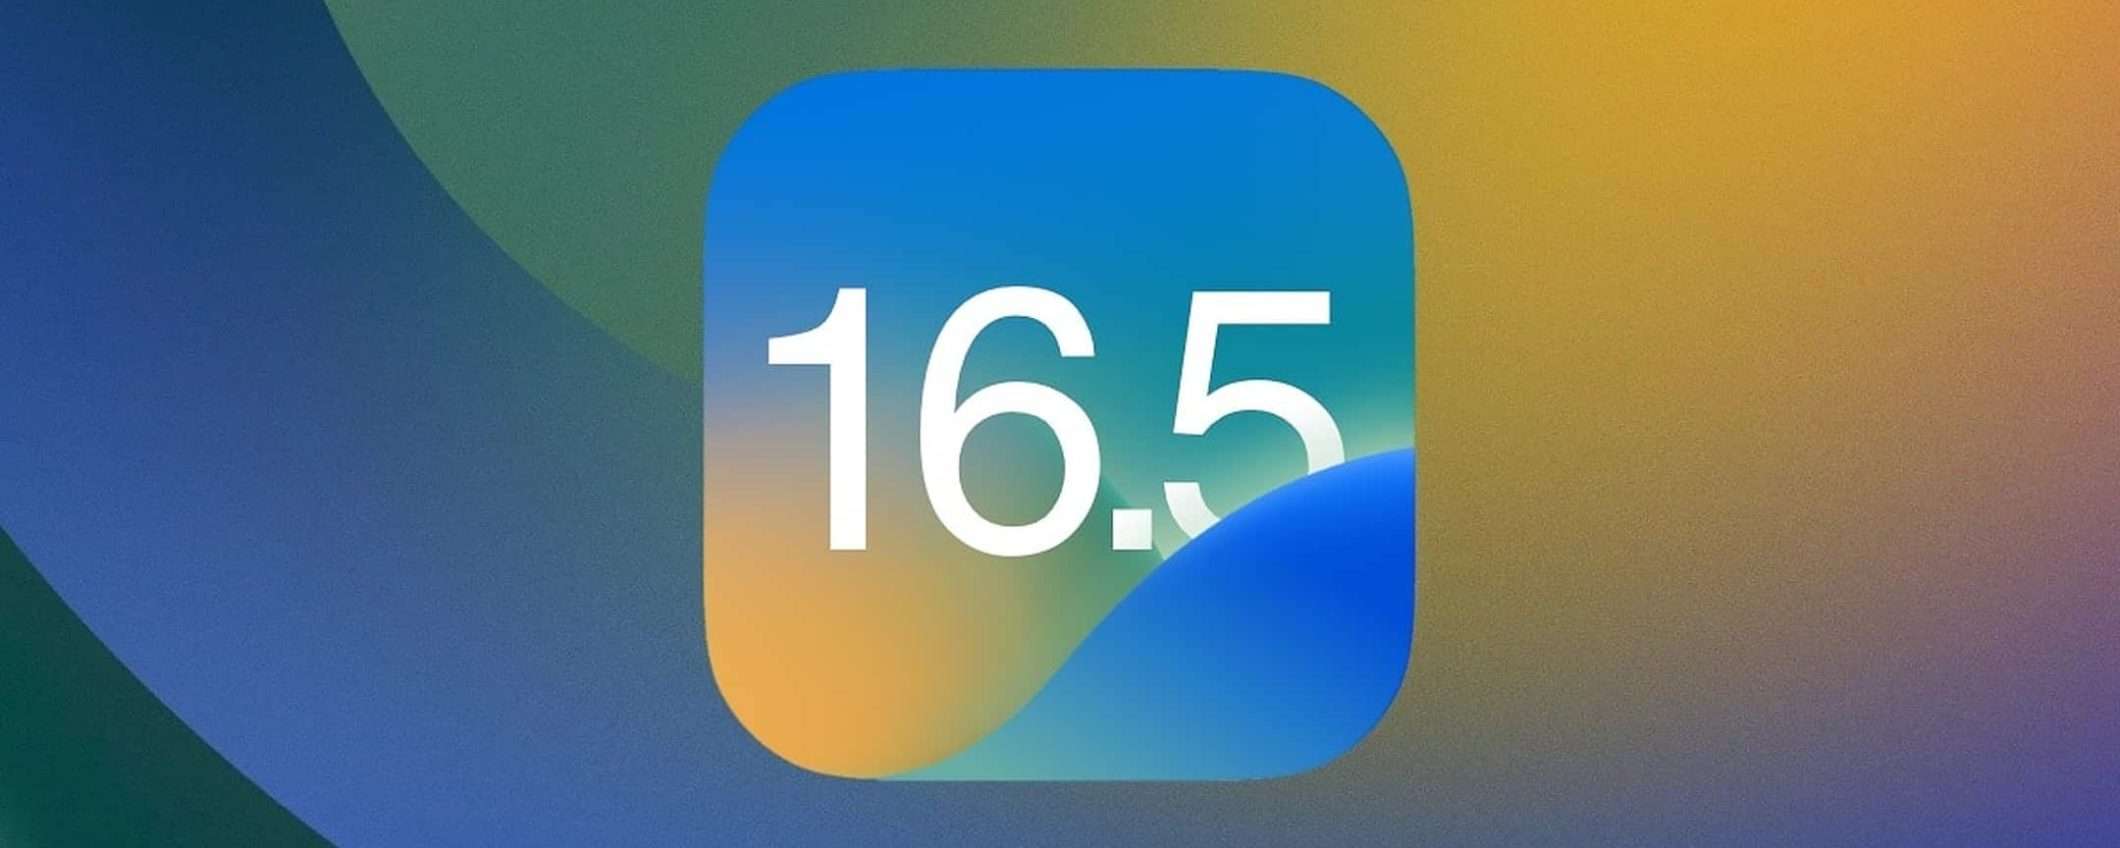 iOS 16.5.1: risolto il bug dell'adattatore da Lightning a USB 3